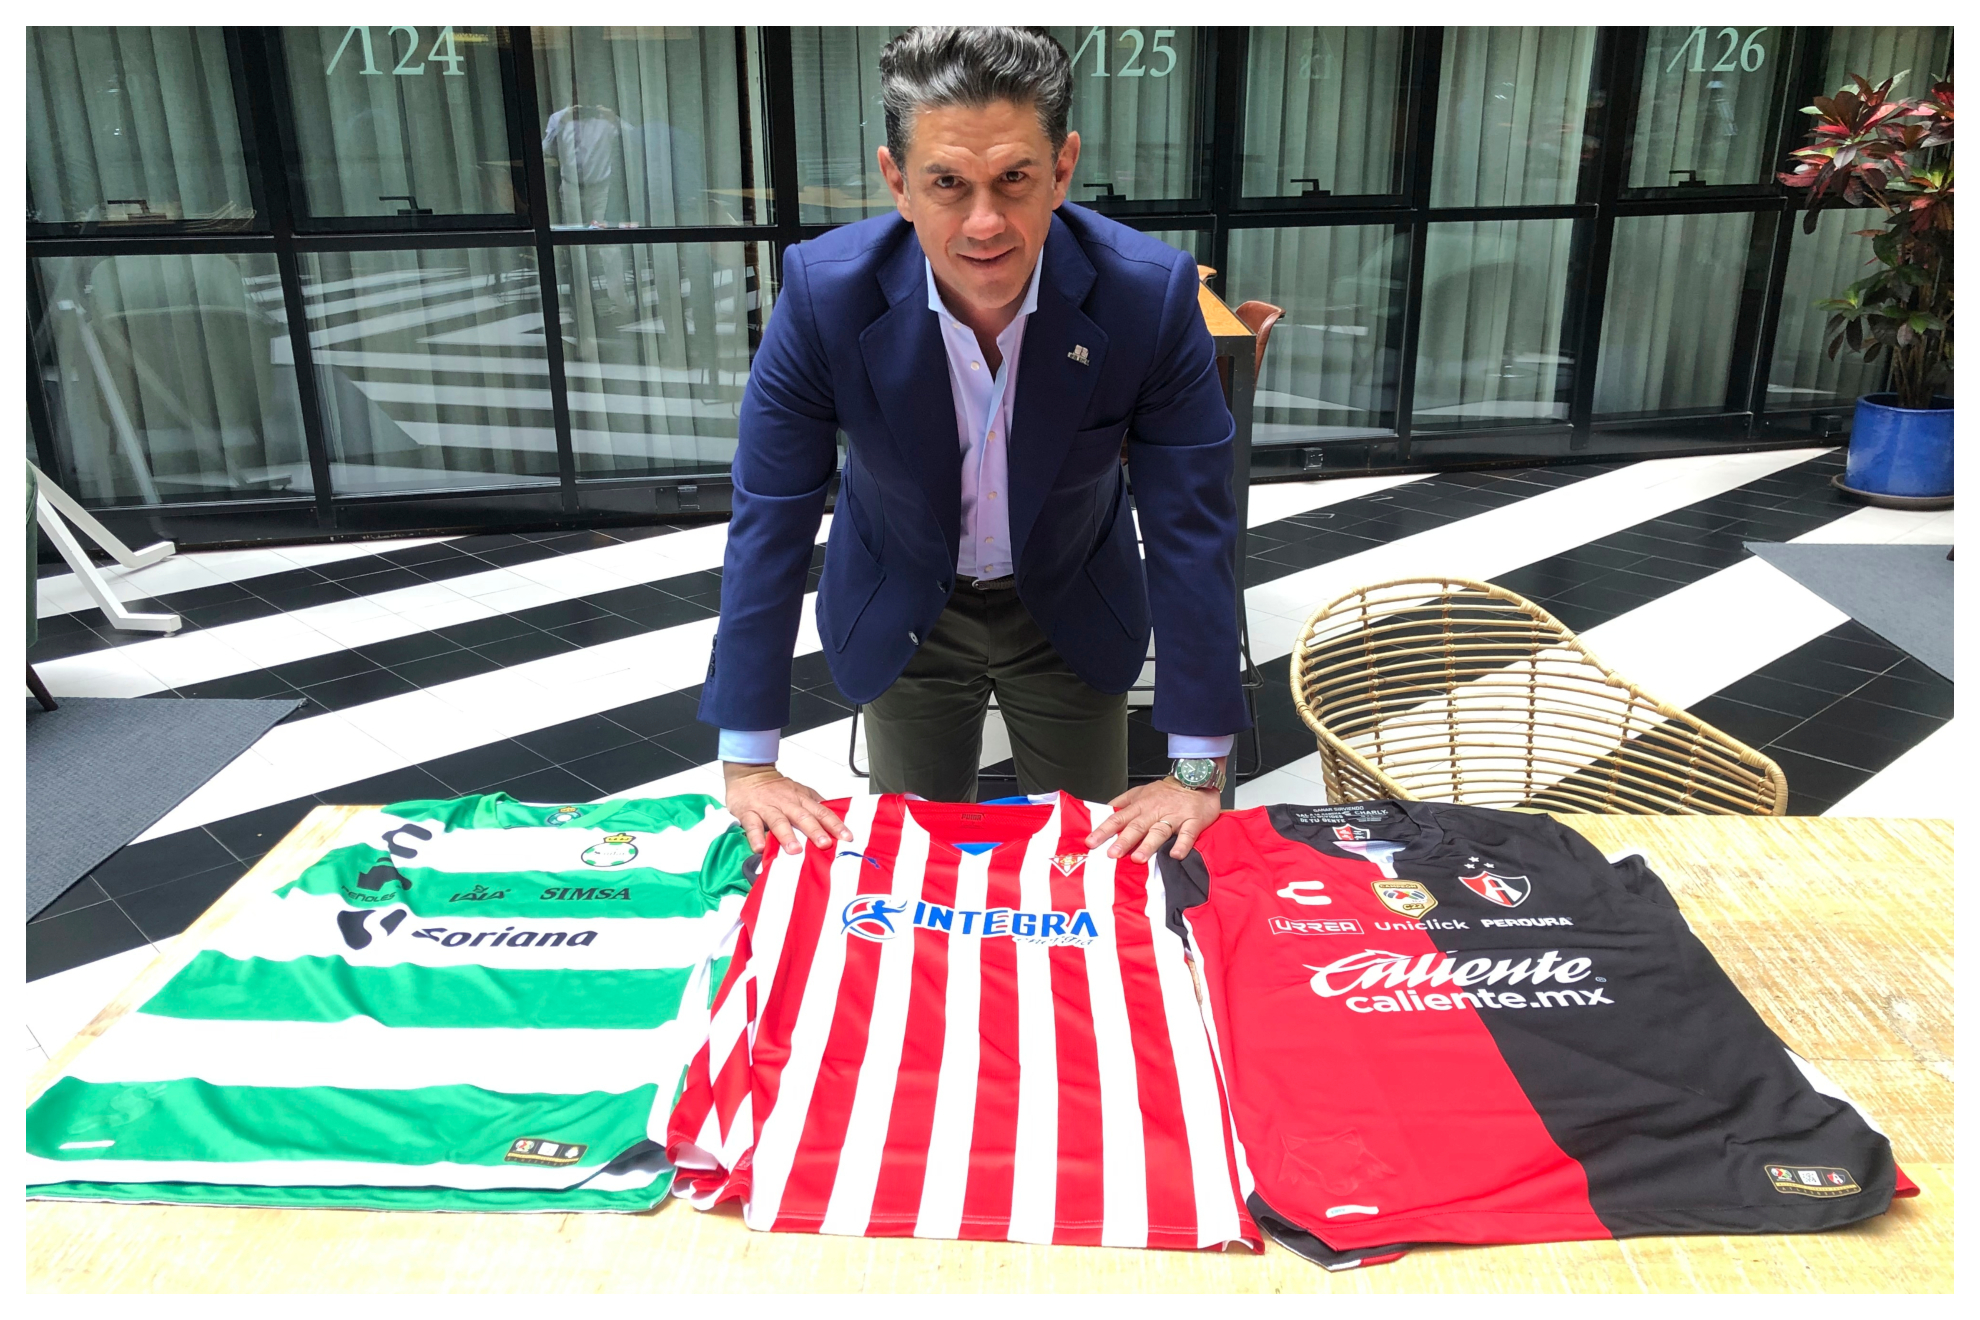 Irarragorri, presidente del Grupo Orlegi, junto a las camisetas de los tres cubes del Grupo: Santos, Sporting y Atlas. JUAN CASTRO